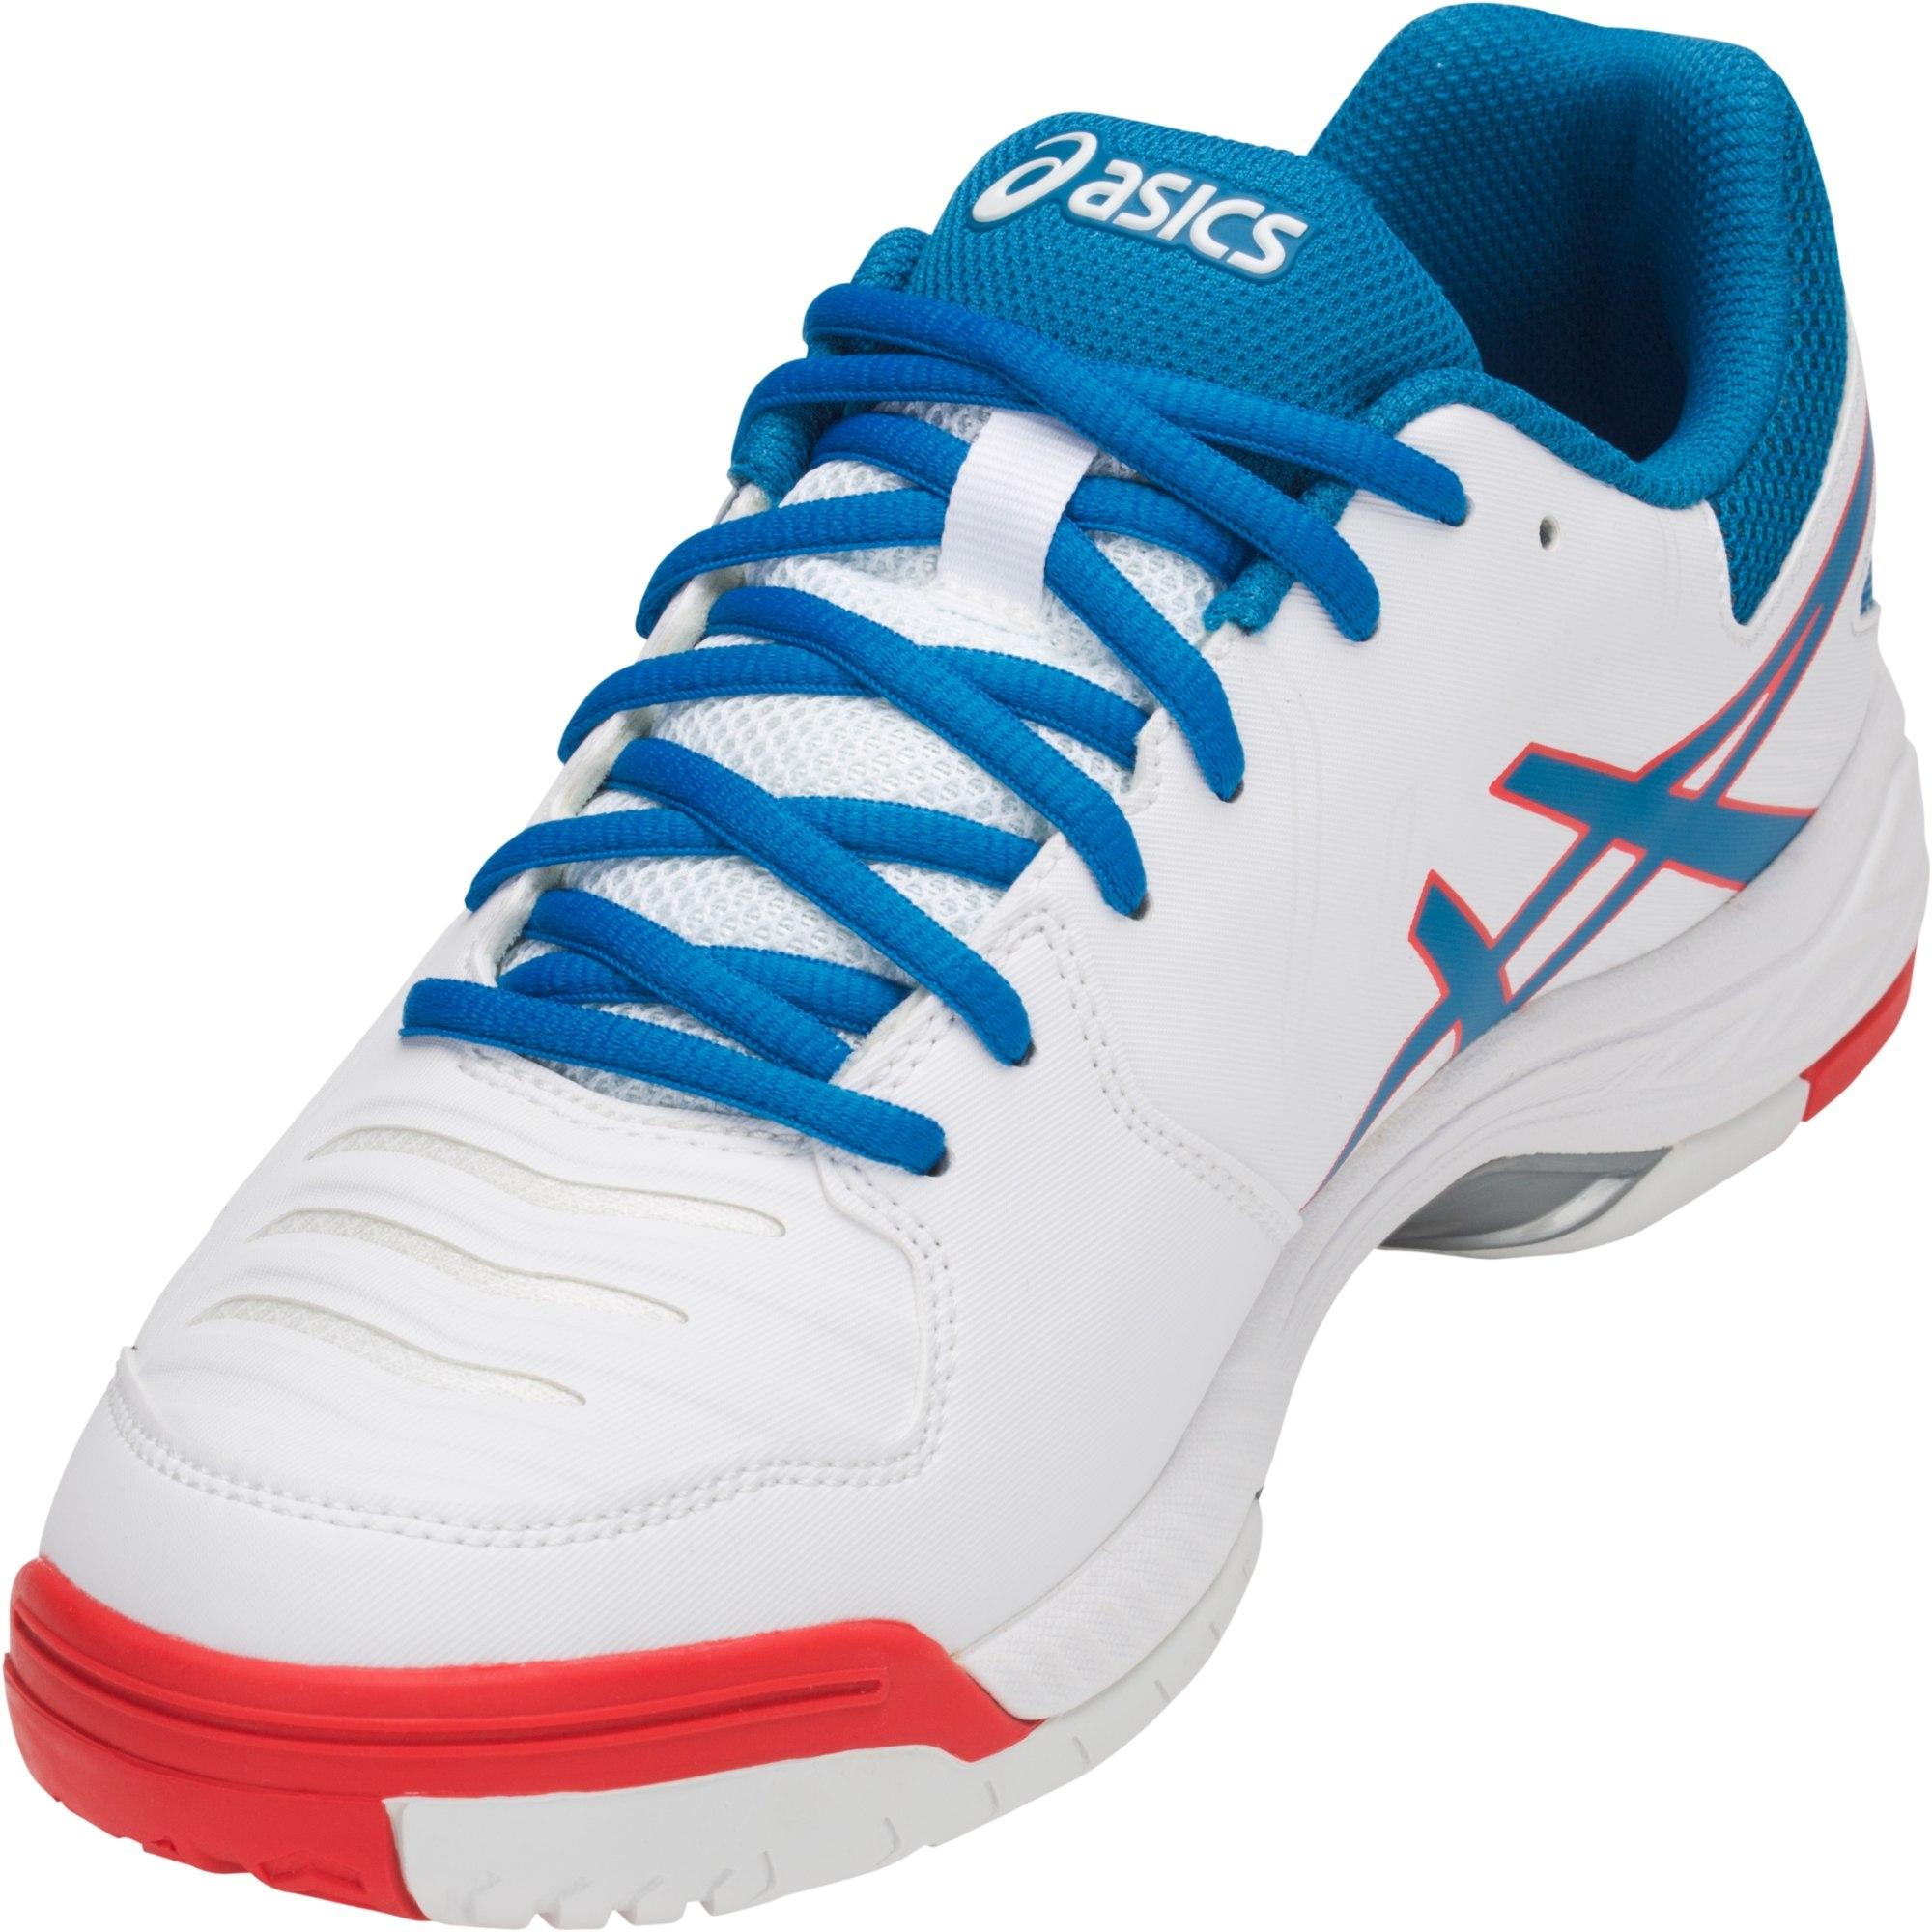 Asics Mens GEL-Game 6 Tennis Shoes - White/Race Blue - www.ermes-unice.fr